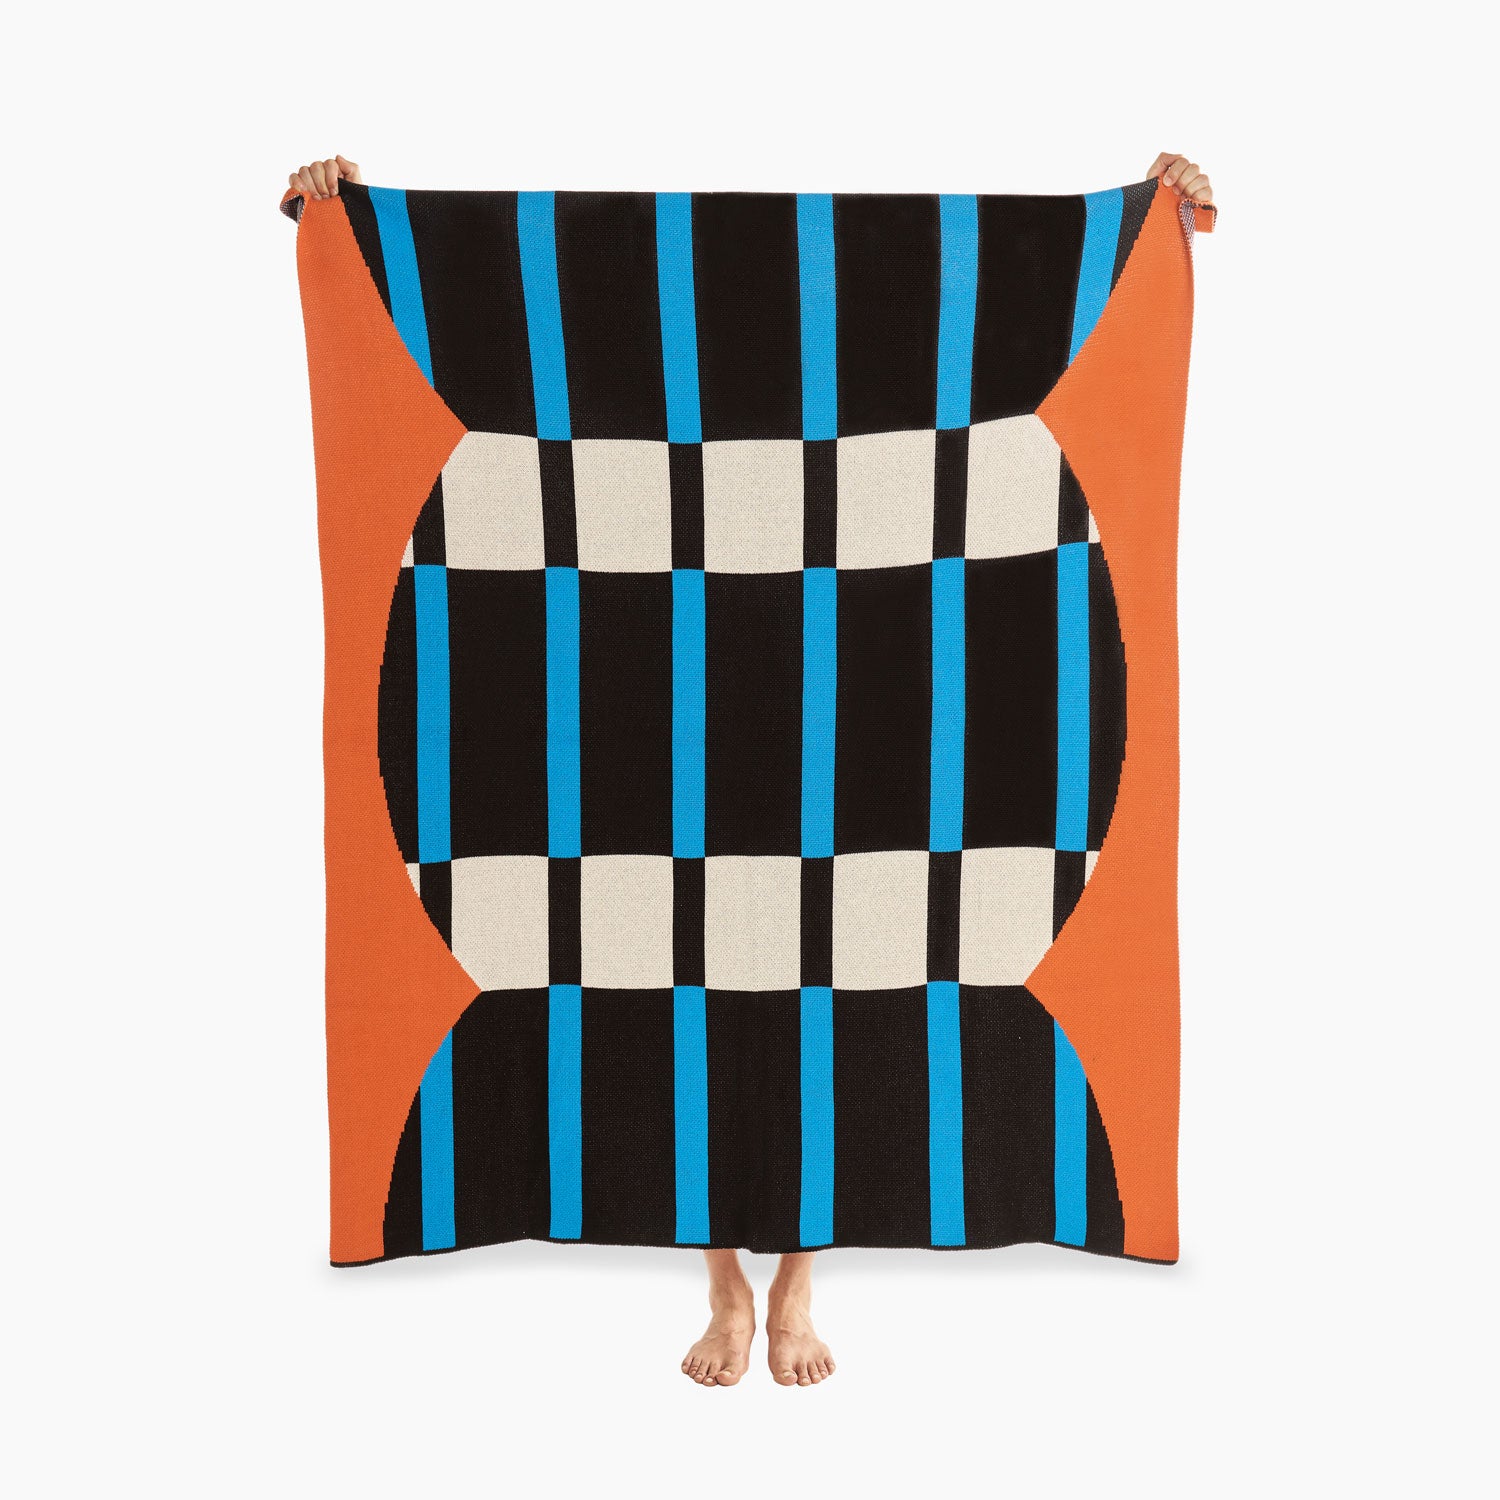 Arvo Knit Blanket by Jesse Brown